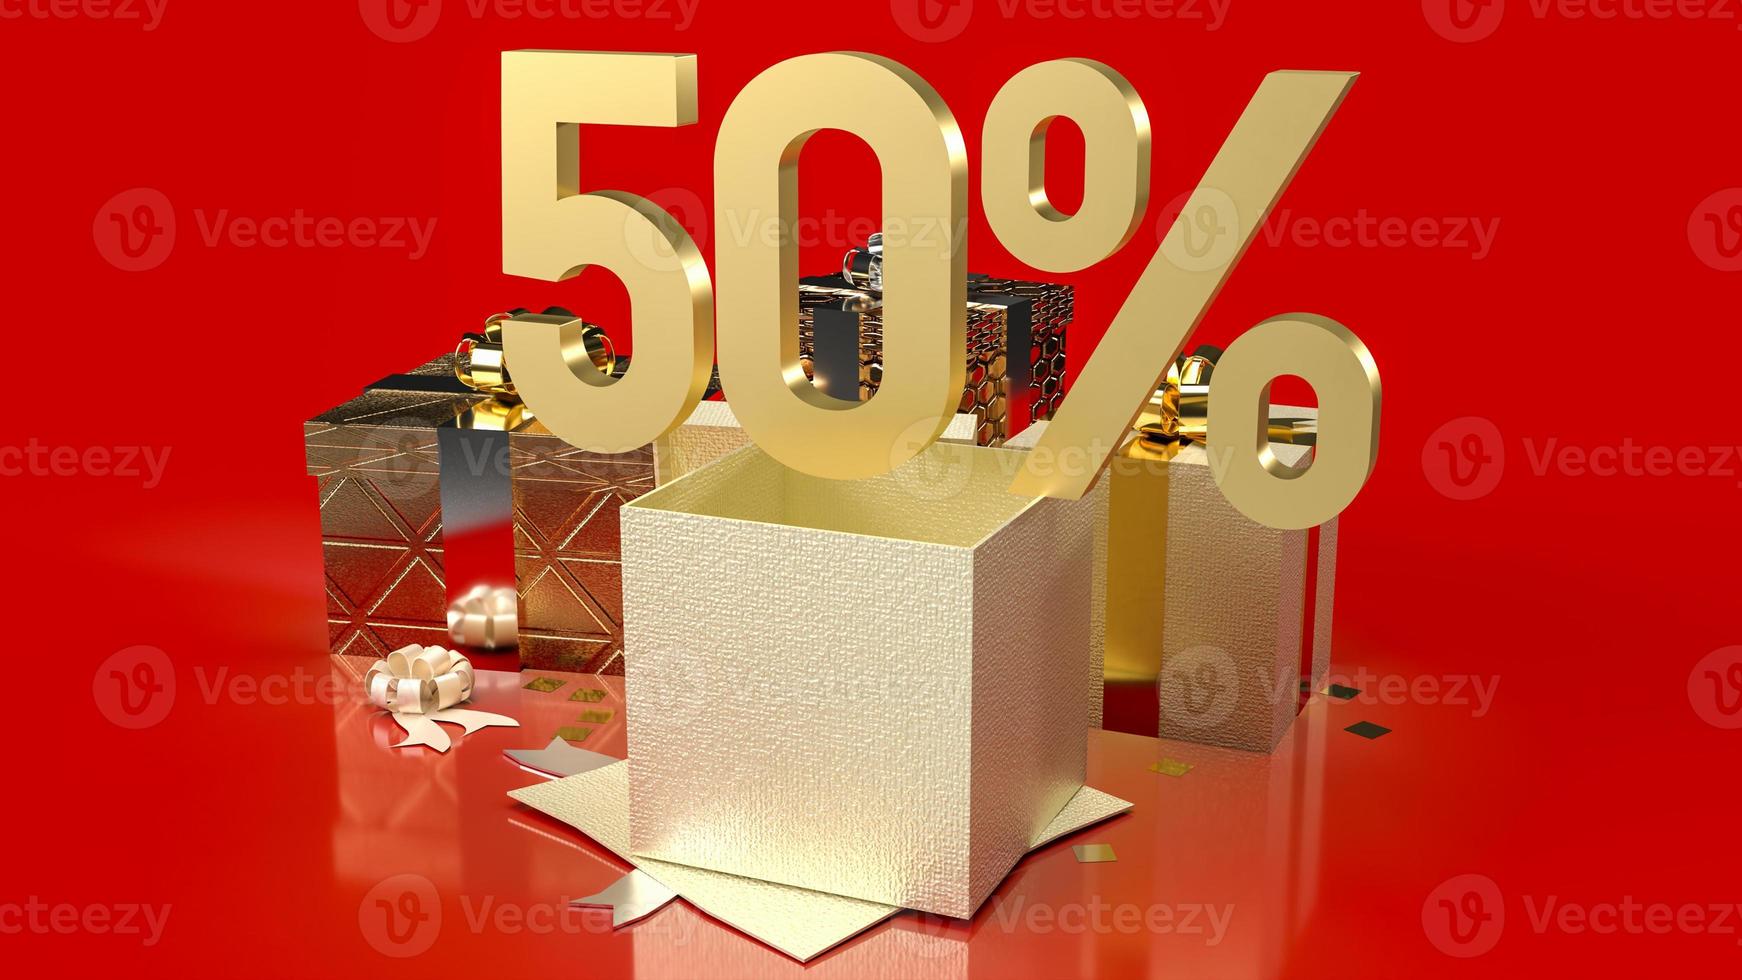 guld nummer procent och presentförpackning på röd bakgrund till salu marknadsföring affärsinnehåll 3d-rendering foto